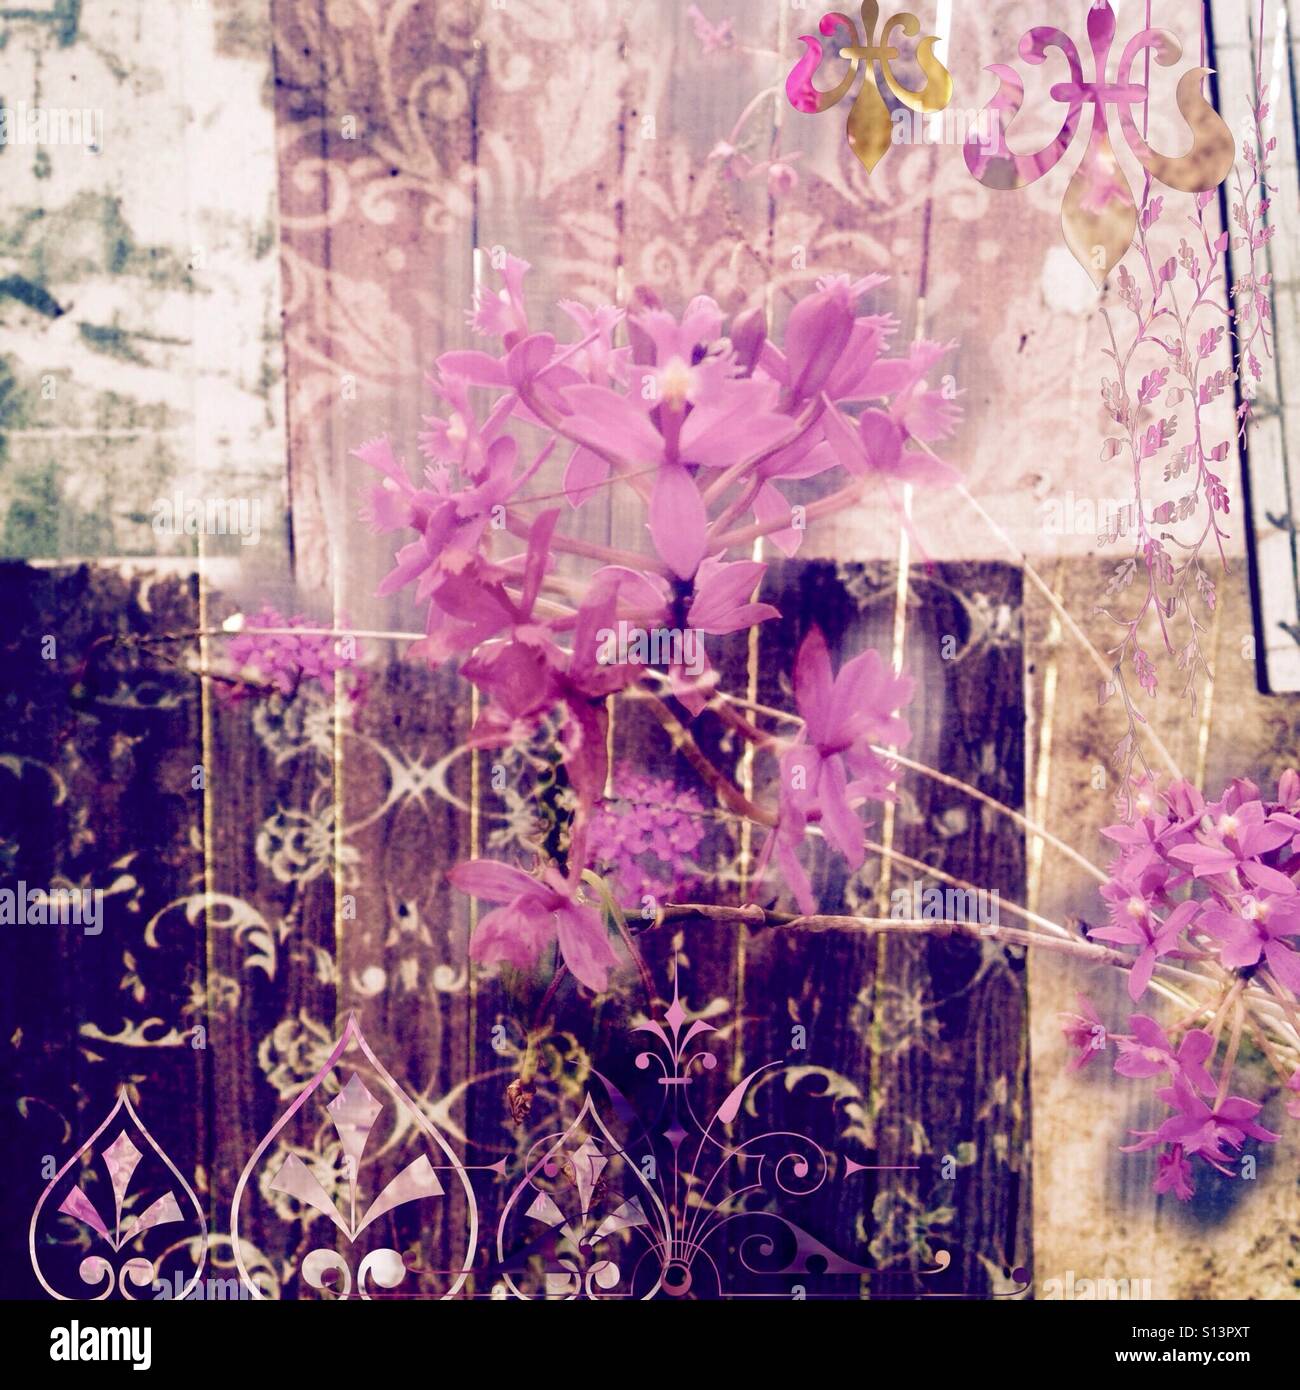 Shabby Chic, photo collage, petali di rosa, lilla, viola e tonalità di terra, grunge e a più livelli di grafica, effetto testurizzato Foto Stock